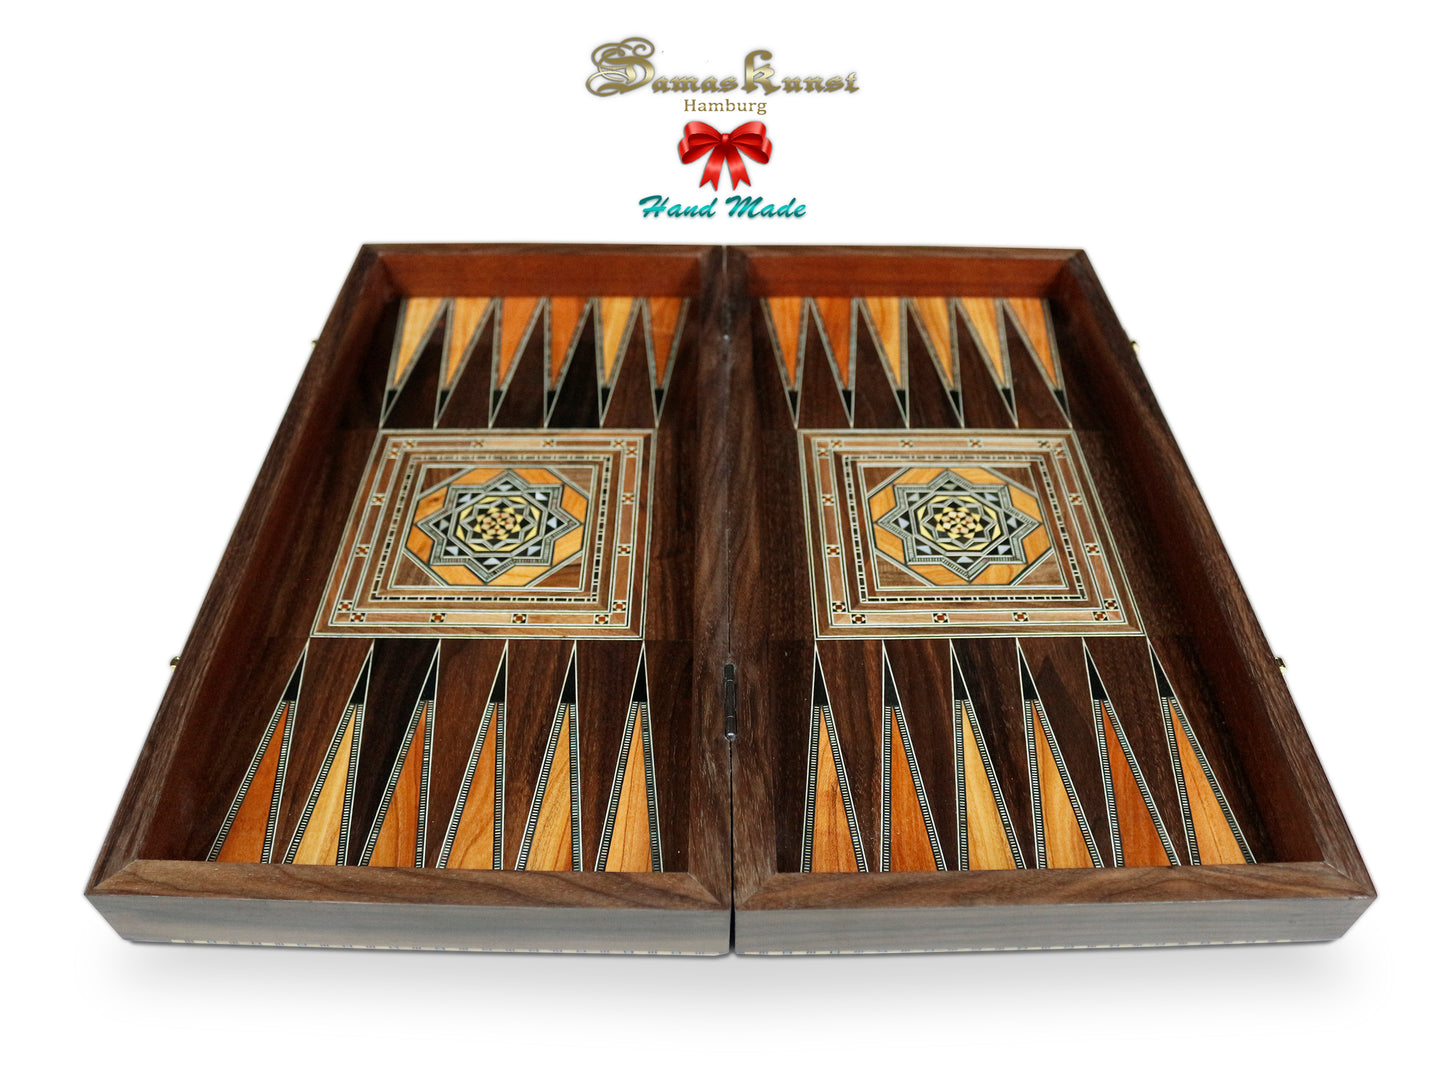 Holz Backgammon/Schach Brett Mit Holz Steine BT 507